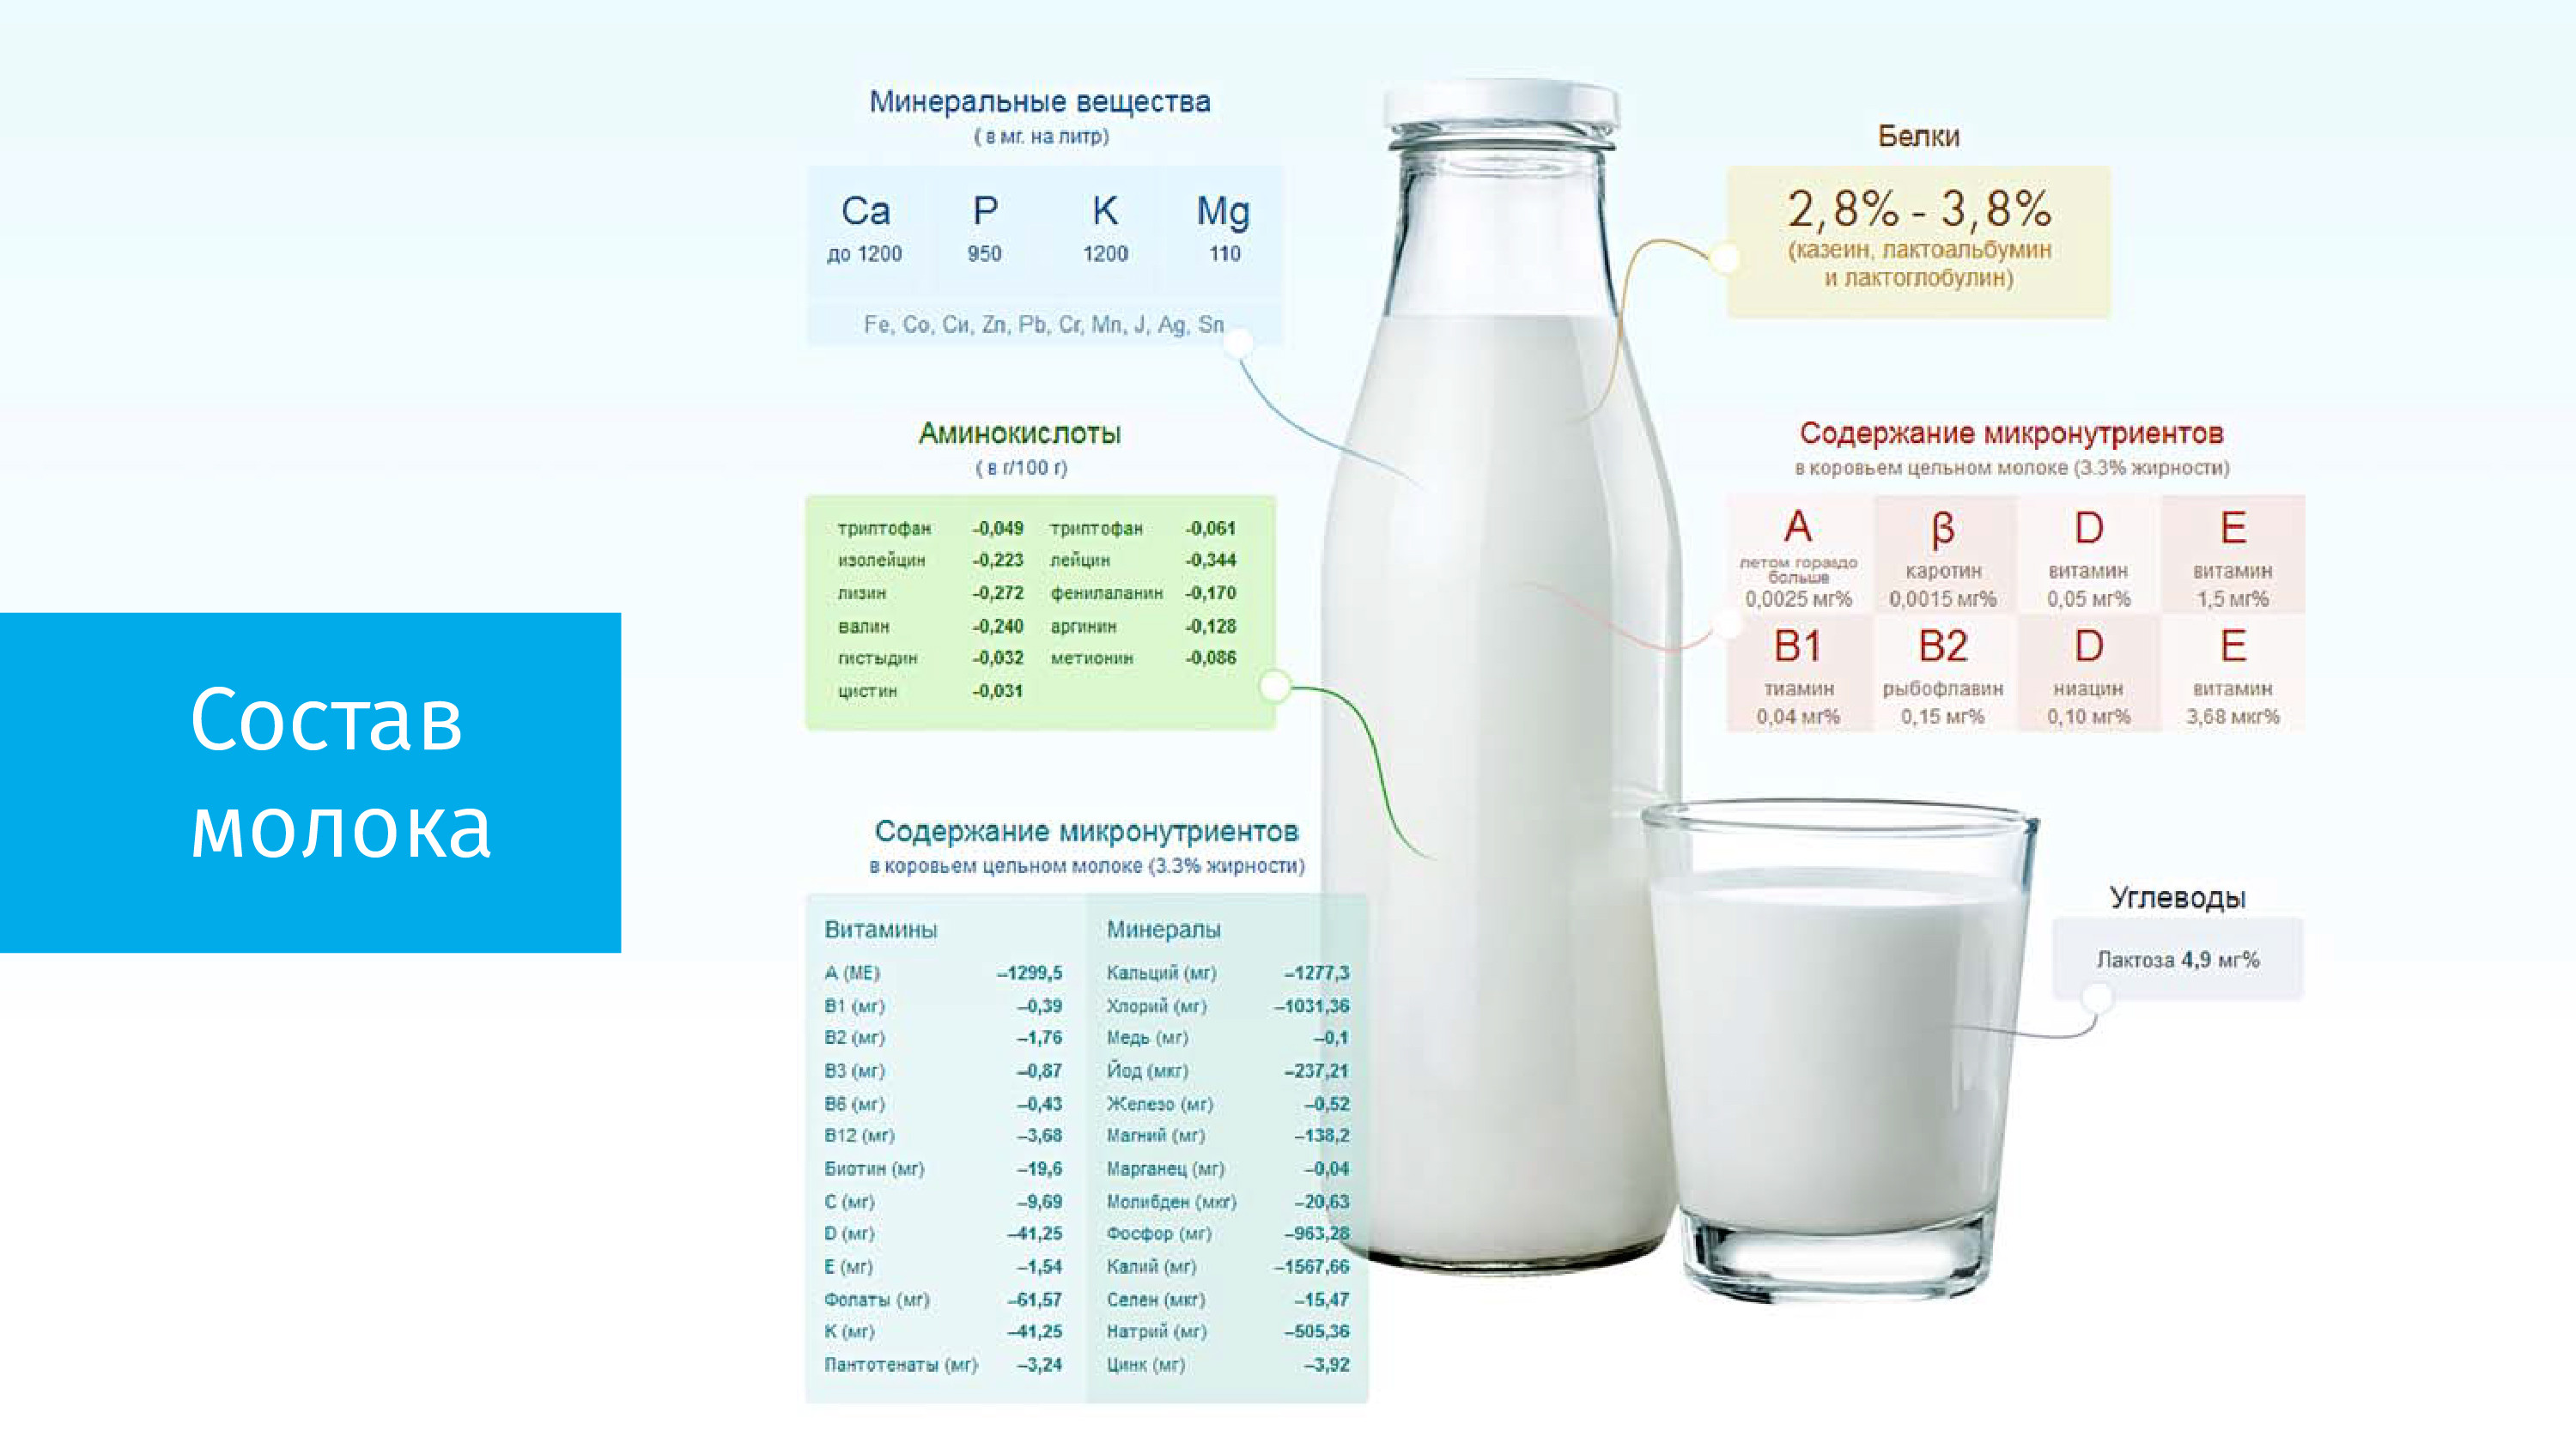 Жирность молока у коровы: от чего зависит и на что влияет ее процент